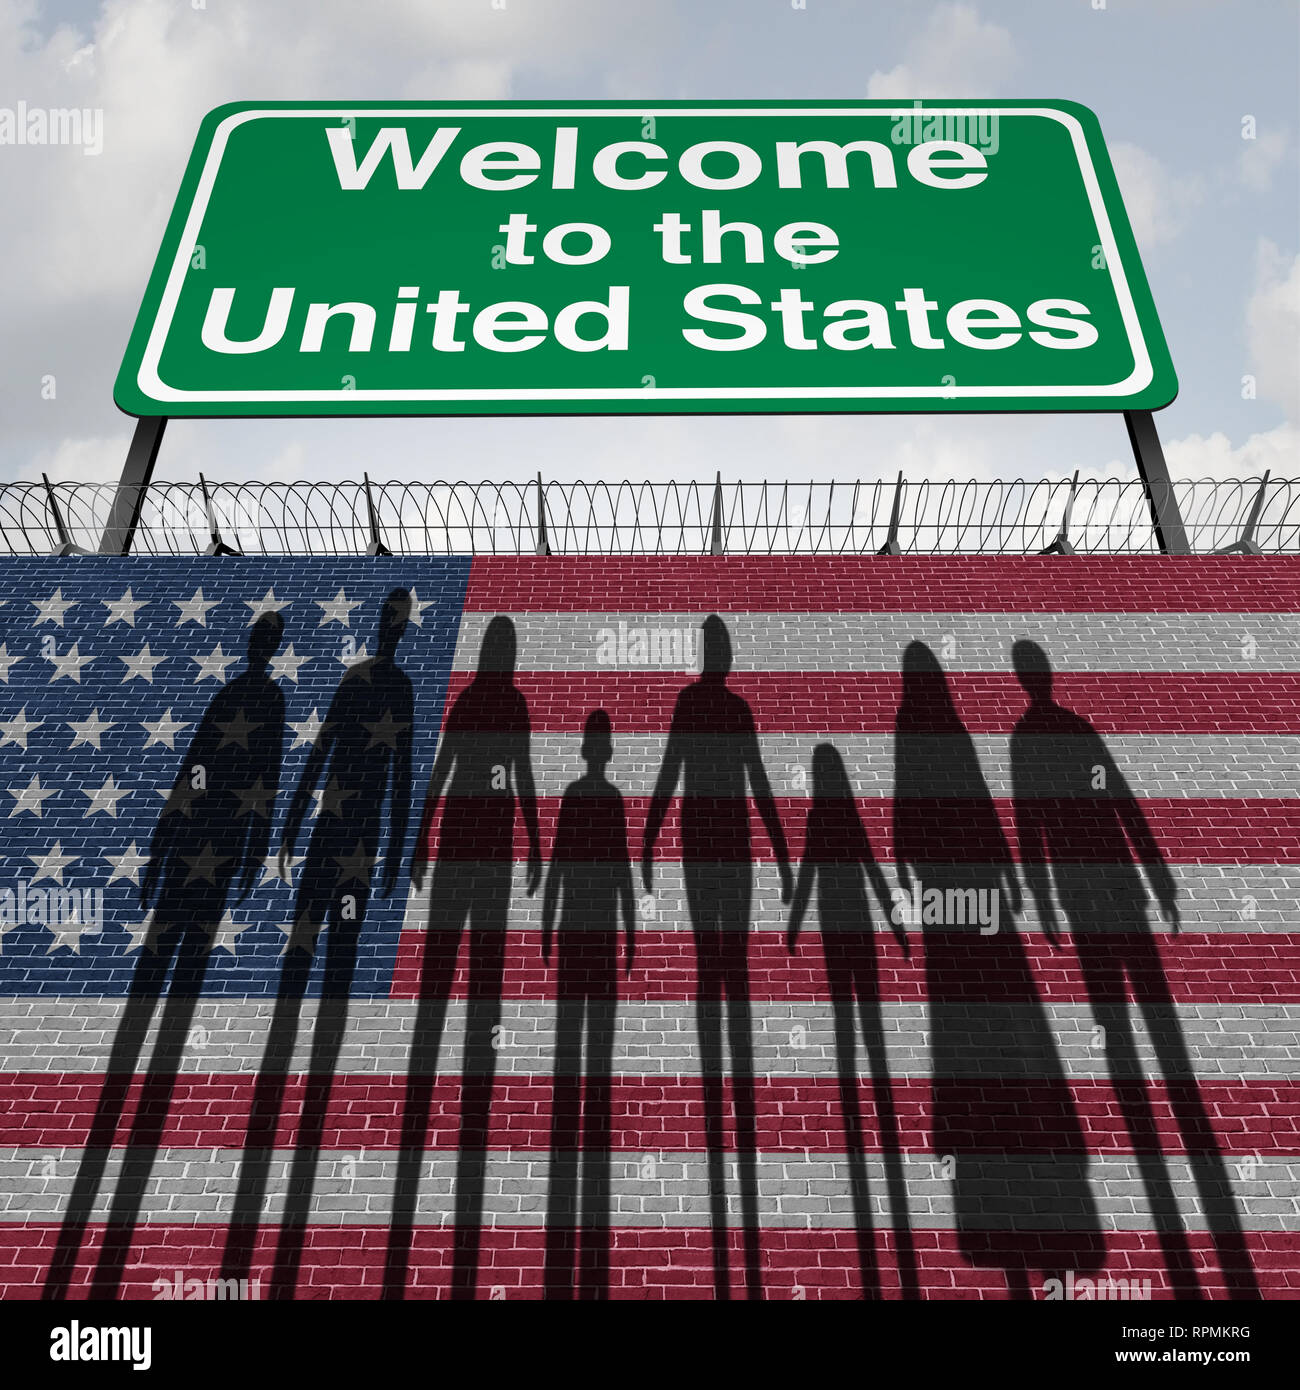 United States Wand und Einwanderung Grenzsicherung für Einwanderer oder illegale Einwanderer nach Amerika als eine amerikanische Zoll Sicherheitskonzept. Stockfoto